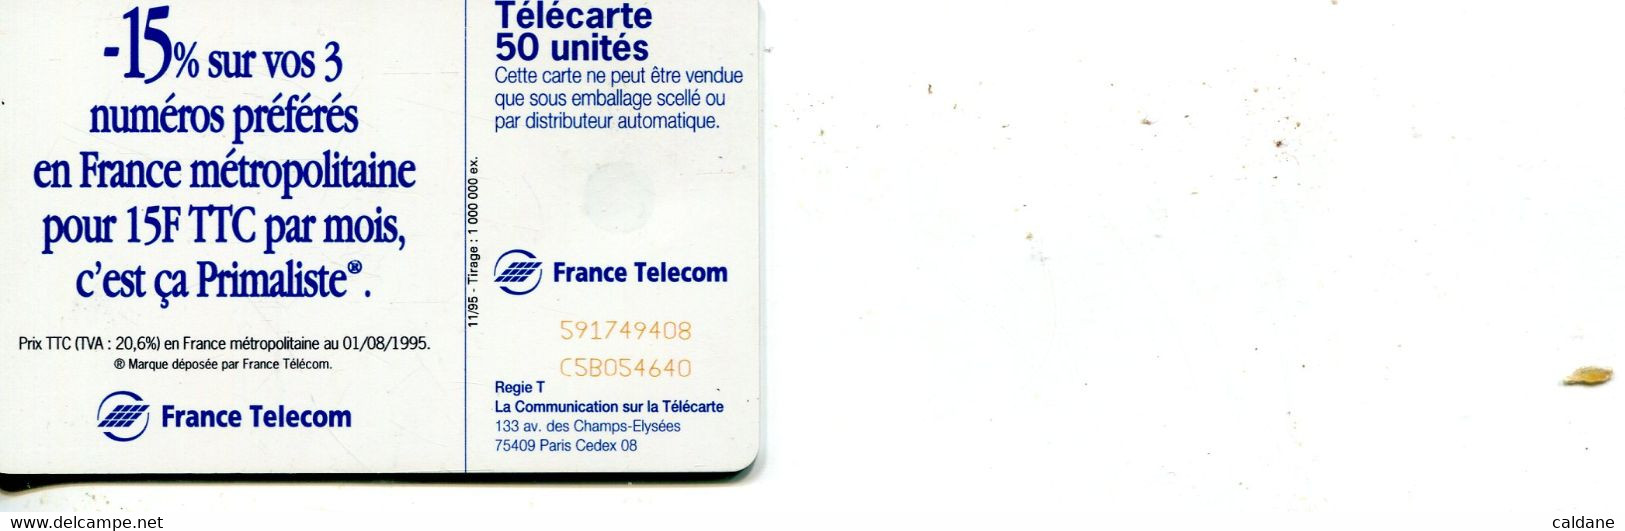 TELECARTE  France Telecom   50  UNITES.  1.000.000 EX. - Telekom-Betreiber